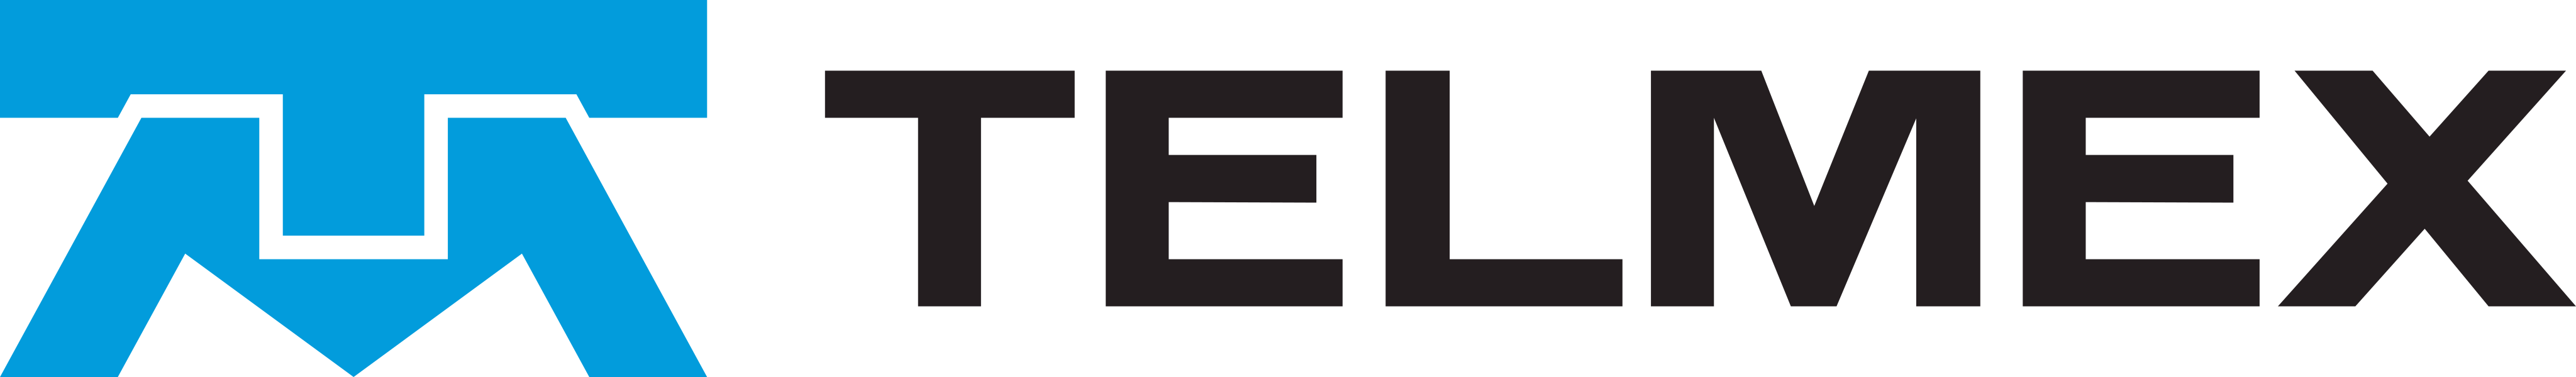 telmex logo - Telmex Logo